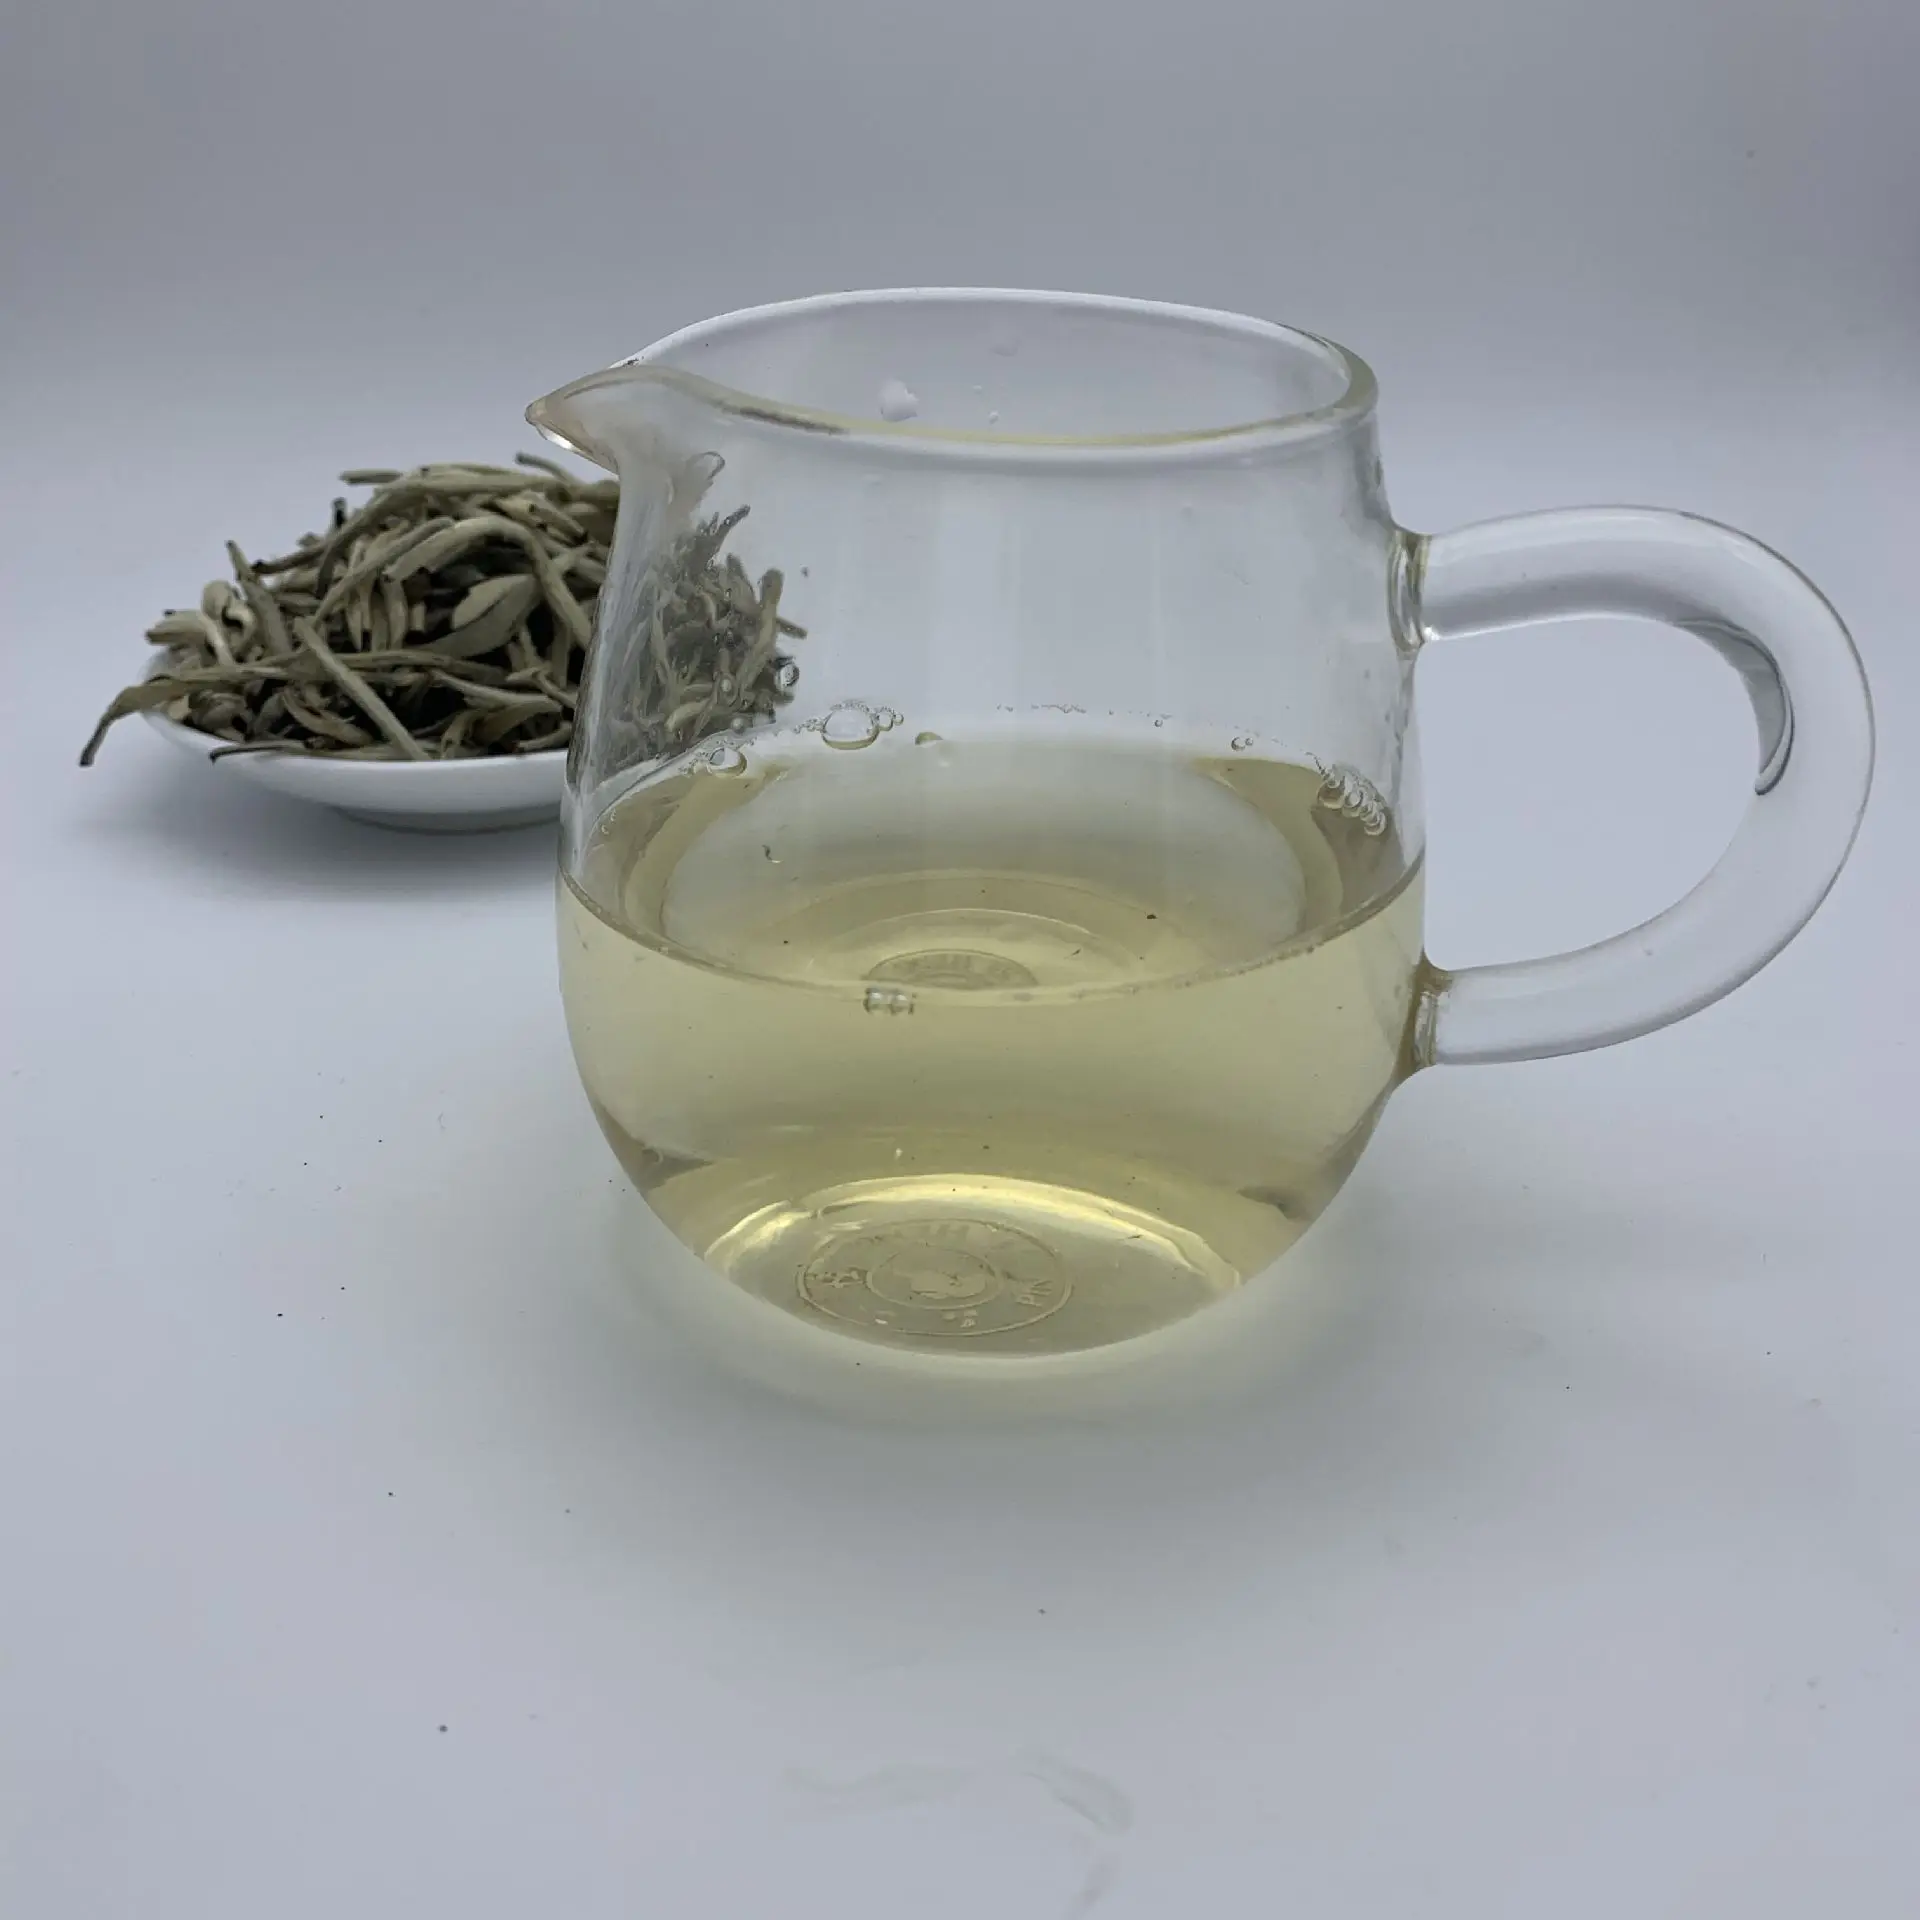 150 g Herbata Biała Chiński Bai Hao Yin Zhen Herbata Biała Srebrna Igła Herbata Dla Wagi Sypki Herbata, Naturalny, Organiczne Piękno Zdrowe Odżywianie